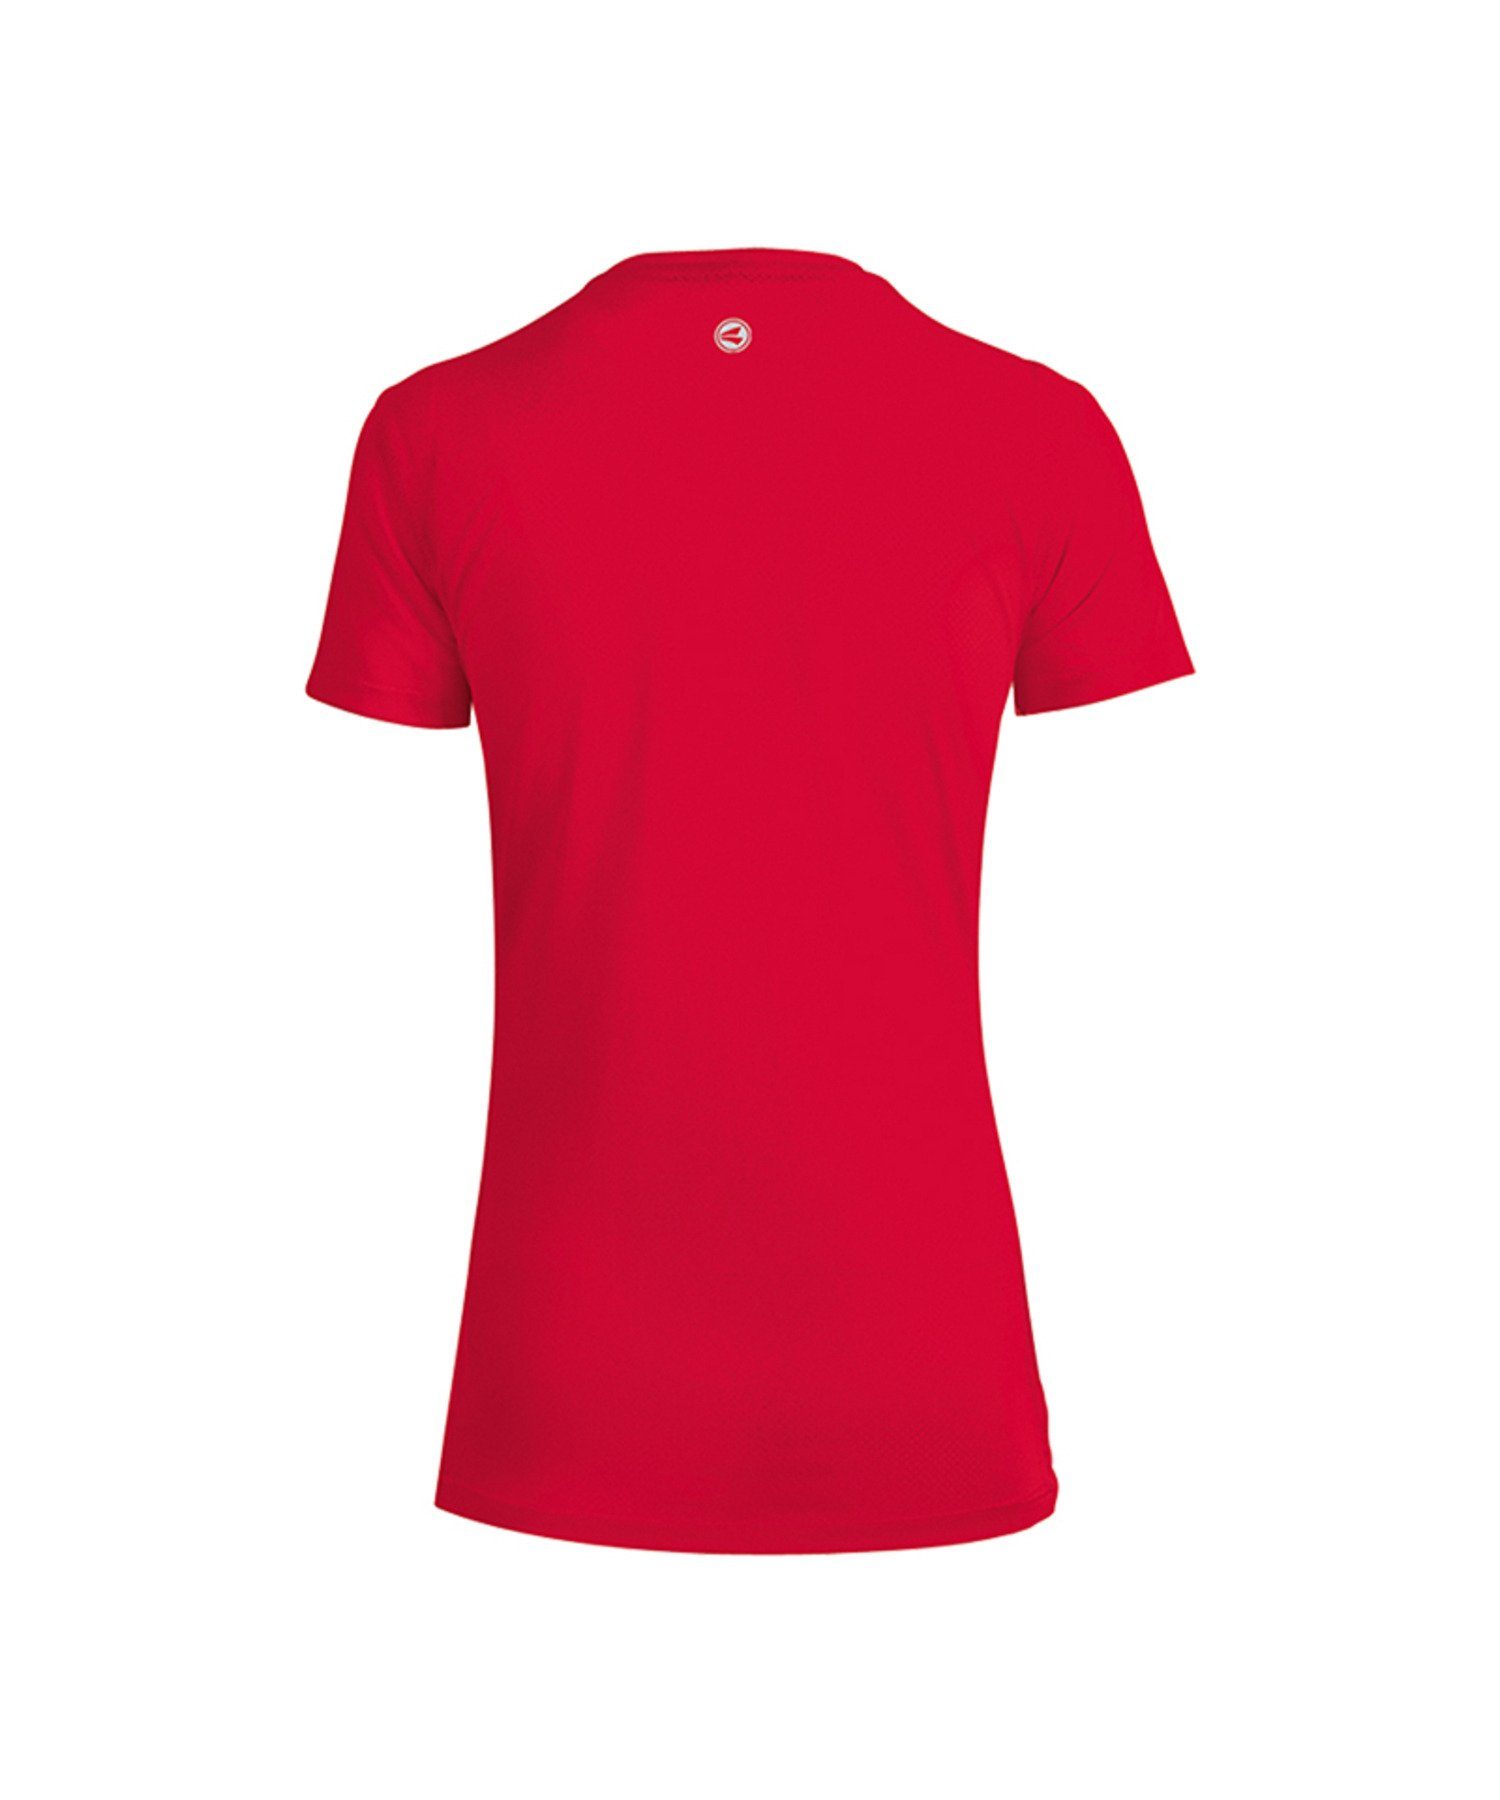 Jako Damen 2.0 default Rot Laufshirt T-Shirt Running Run